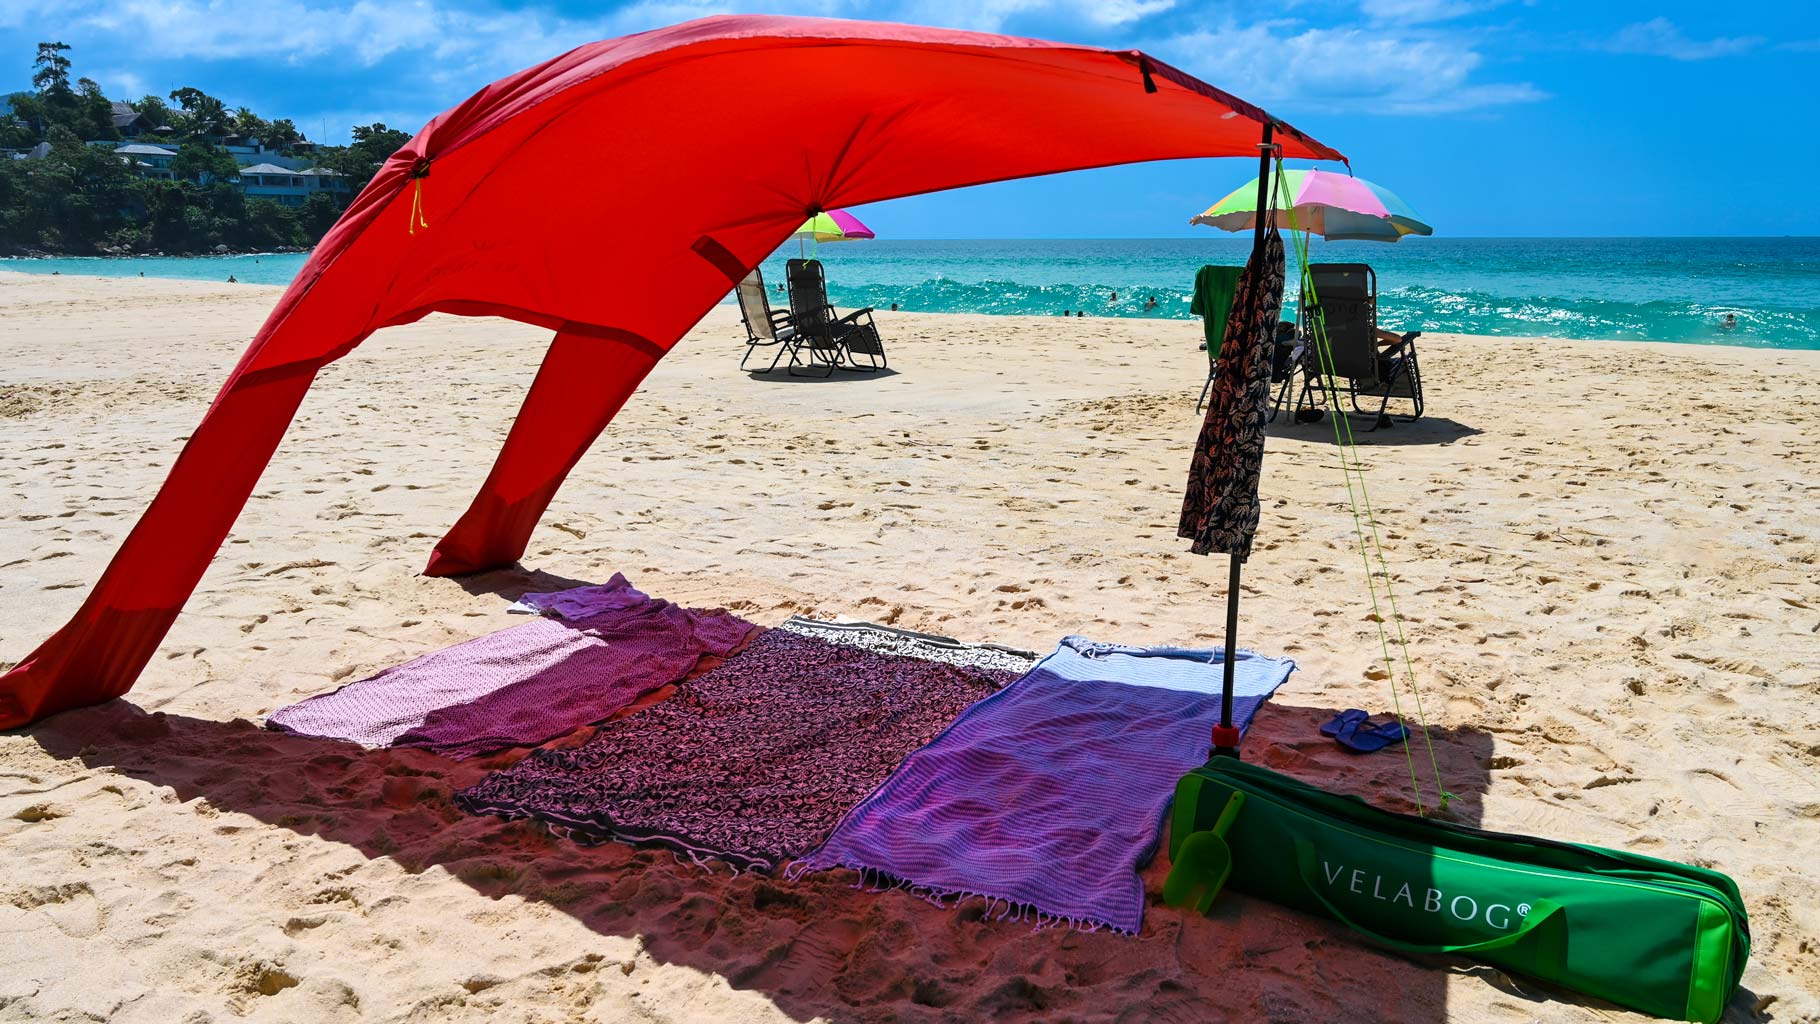 Voile d’ombrage tente plage Velabog Breeze rouge sur une plage balayée d’un vent faible. Voile d’ombrage, parasol et tente de plage en un seul produit. Beaucoup plus d’ombre qu’avec des parasols classiques.